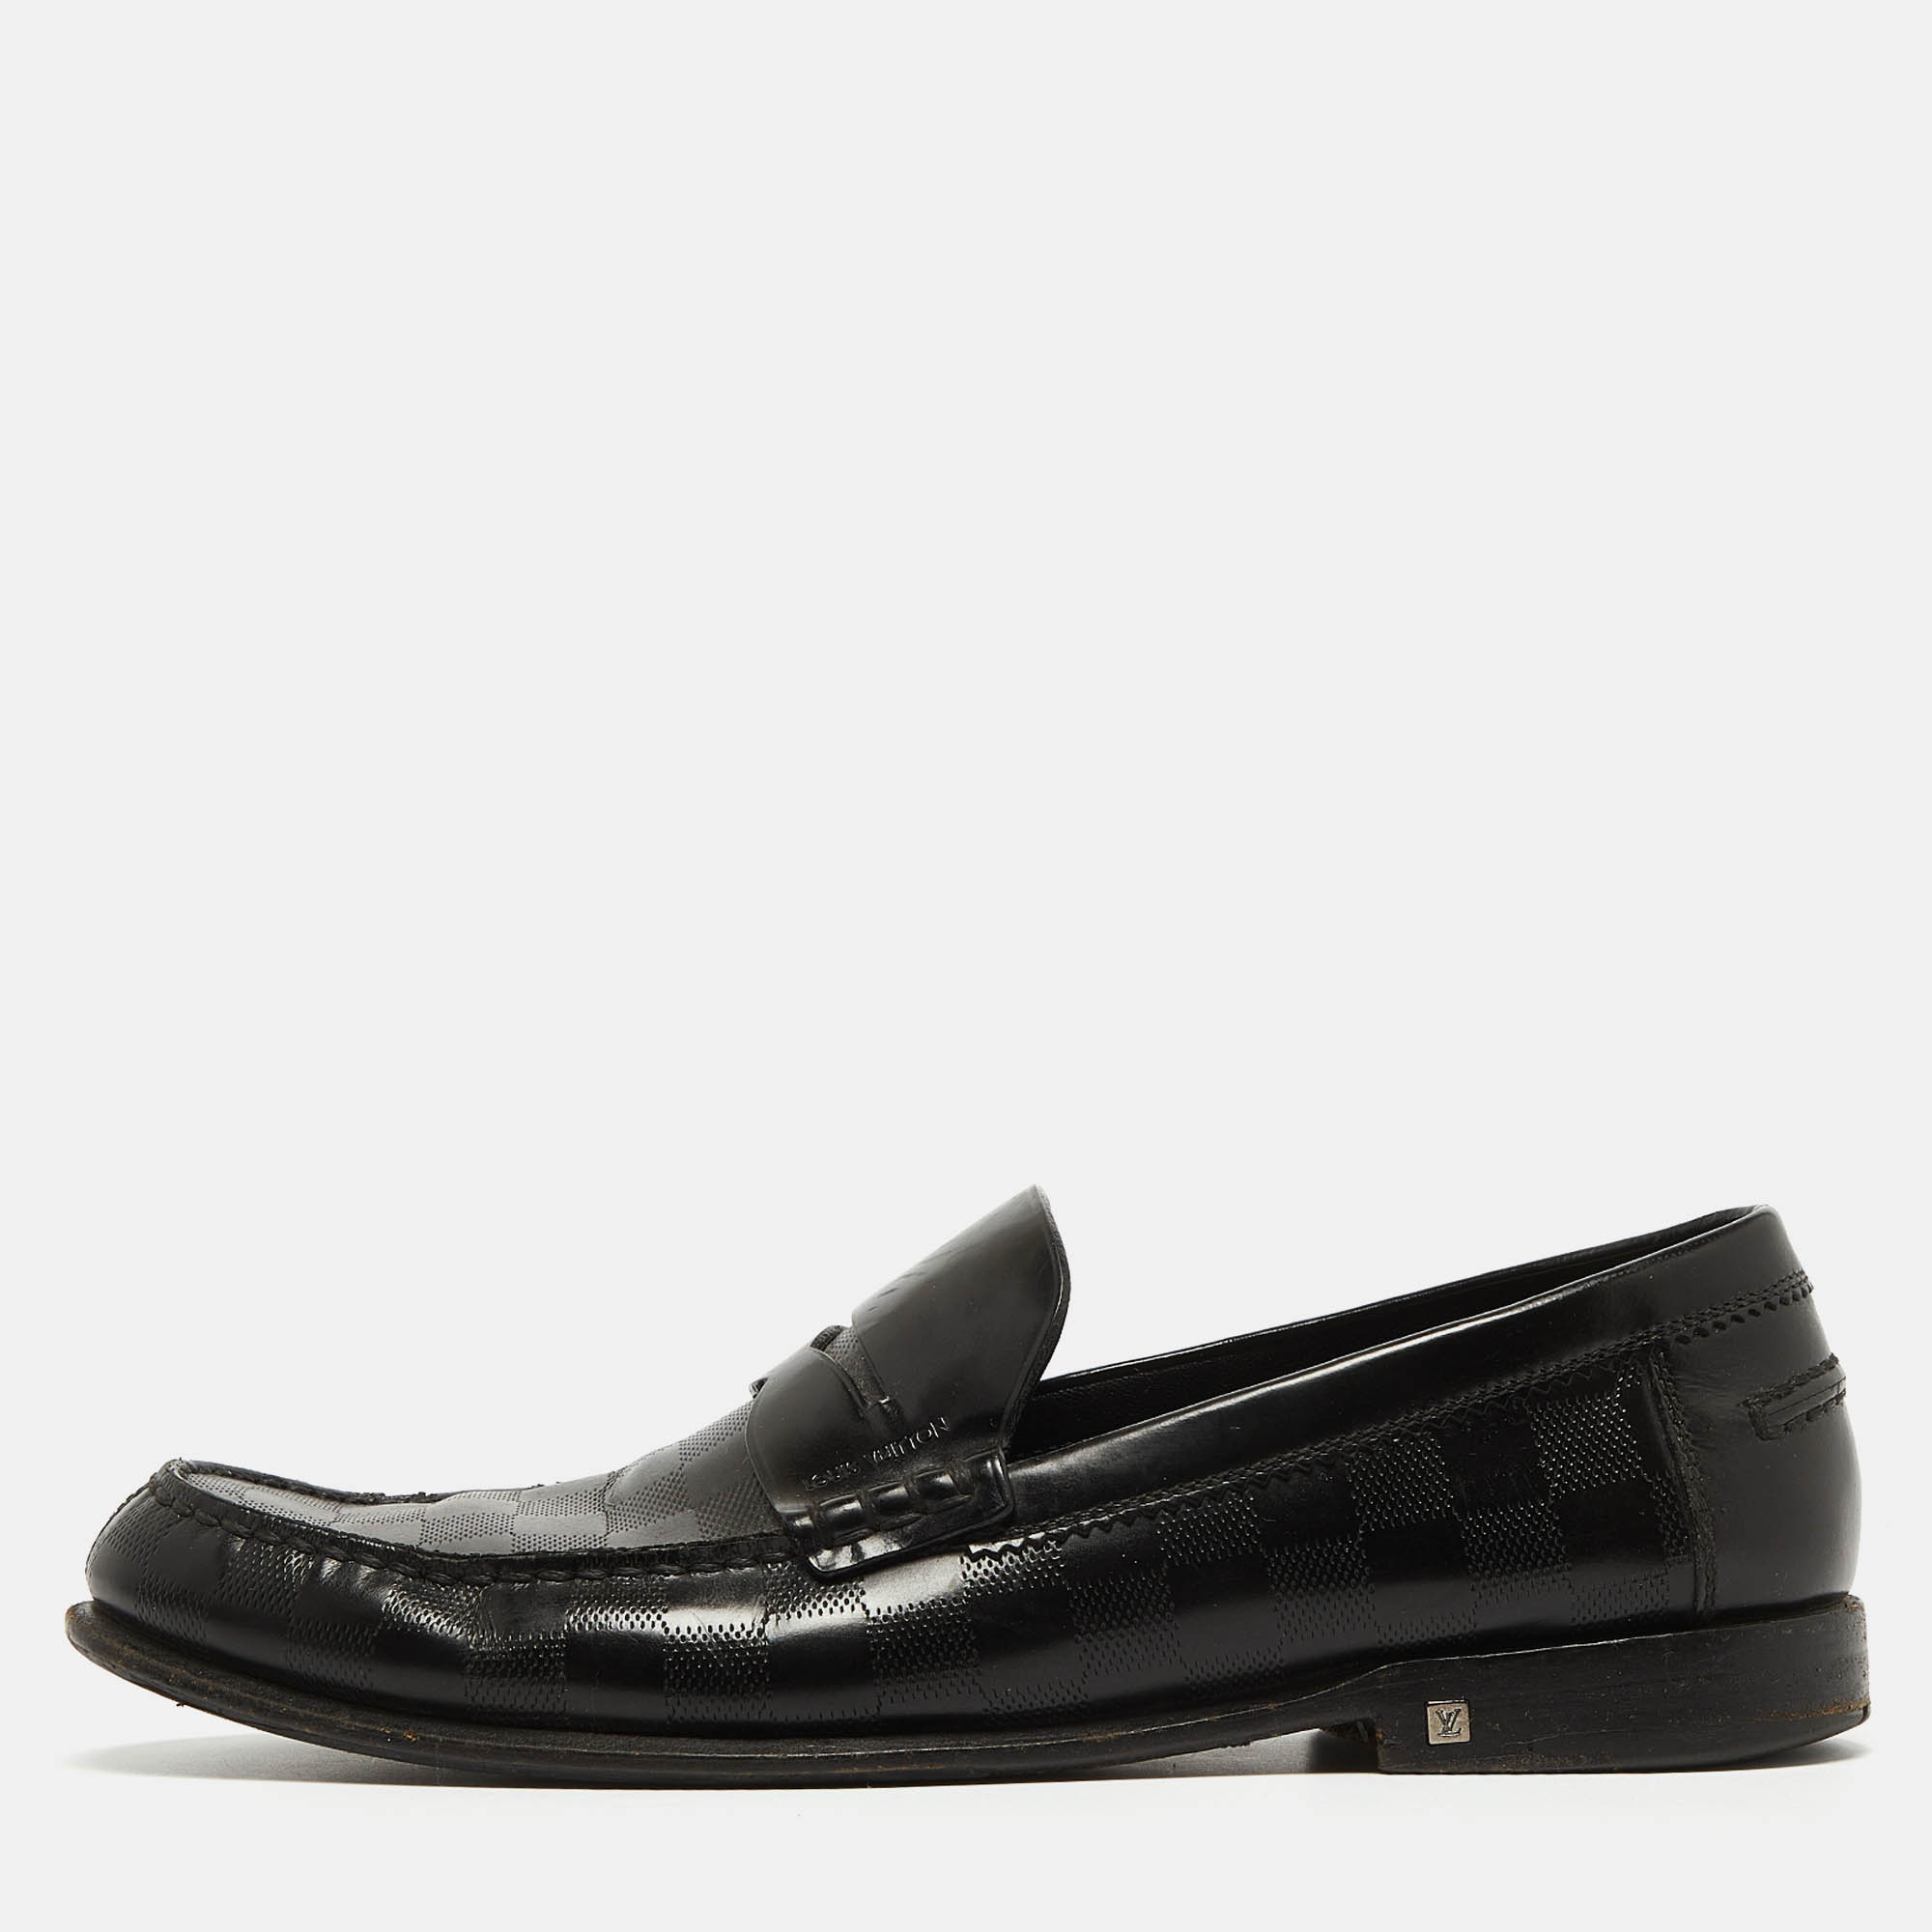 Louis vuitton black damier leather santiago loafers size 41.5